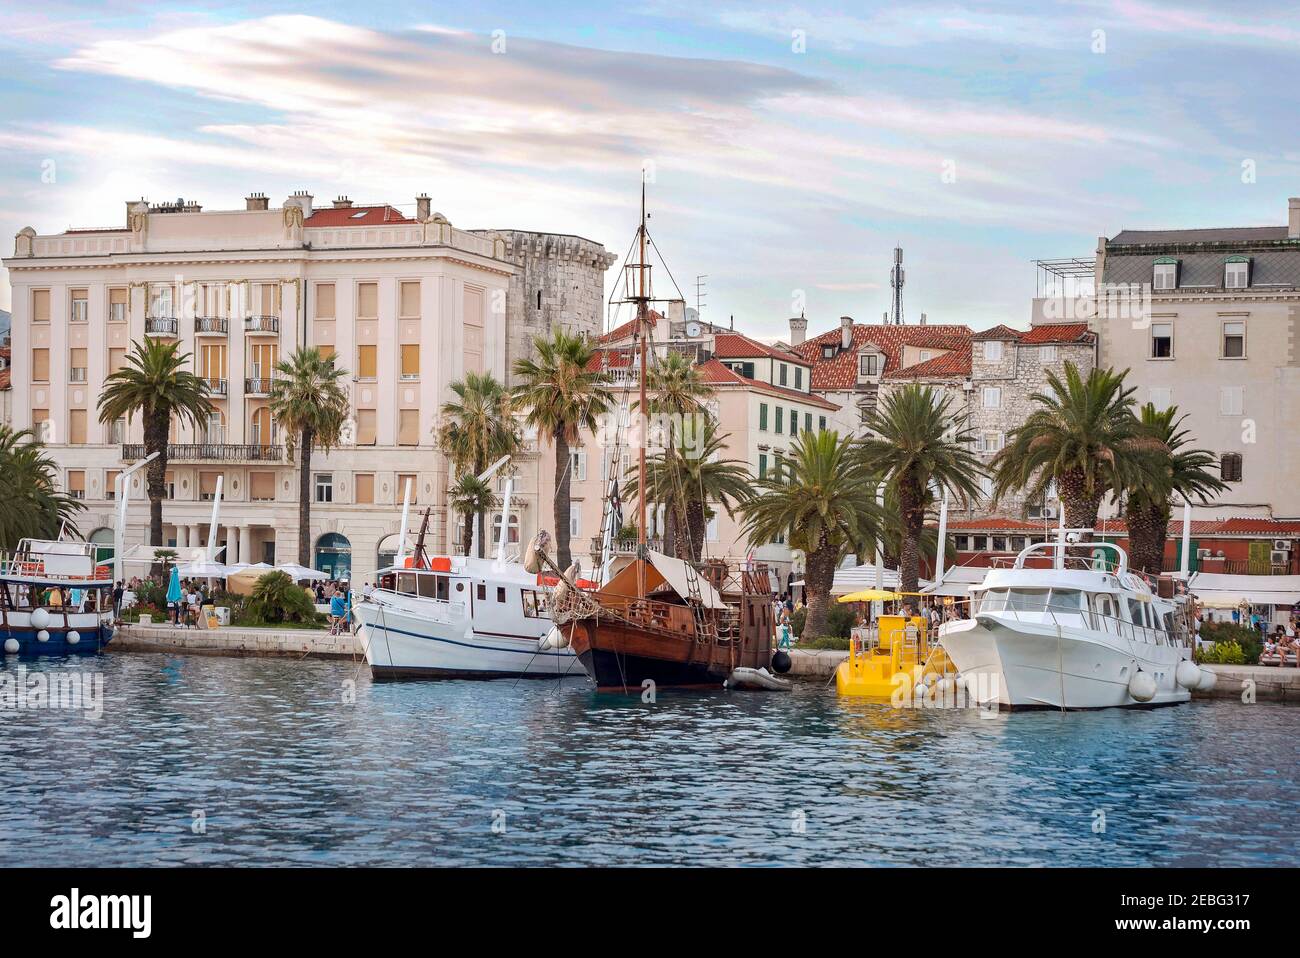 Split, Croatie, 26 août 2019: Ville de Split en Croatie, vue du port à la vieille ville par la mer Adriatique. Banque D'Images